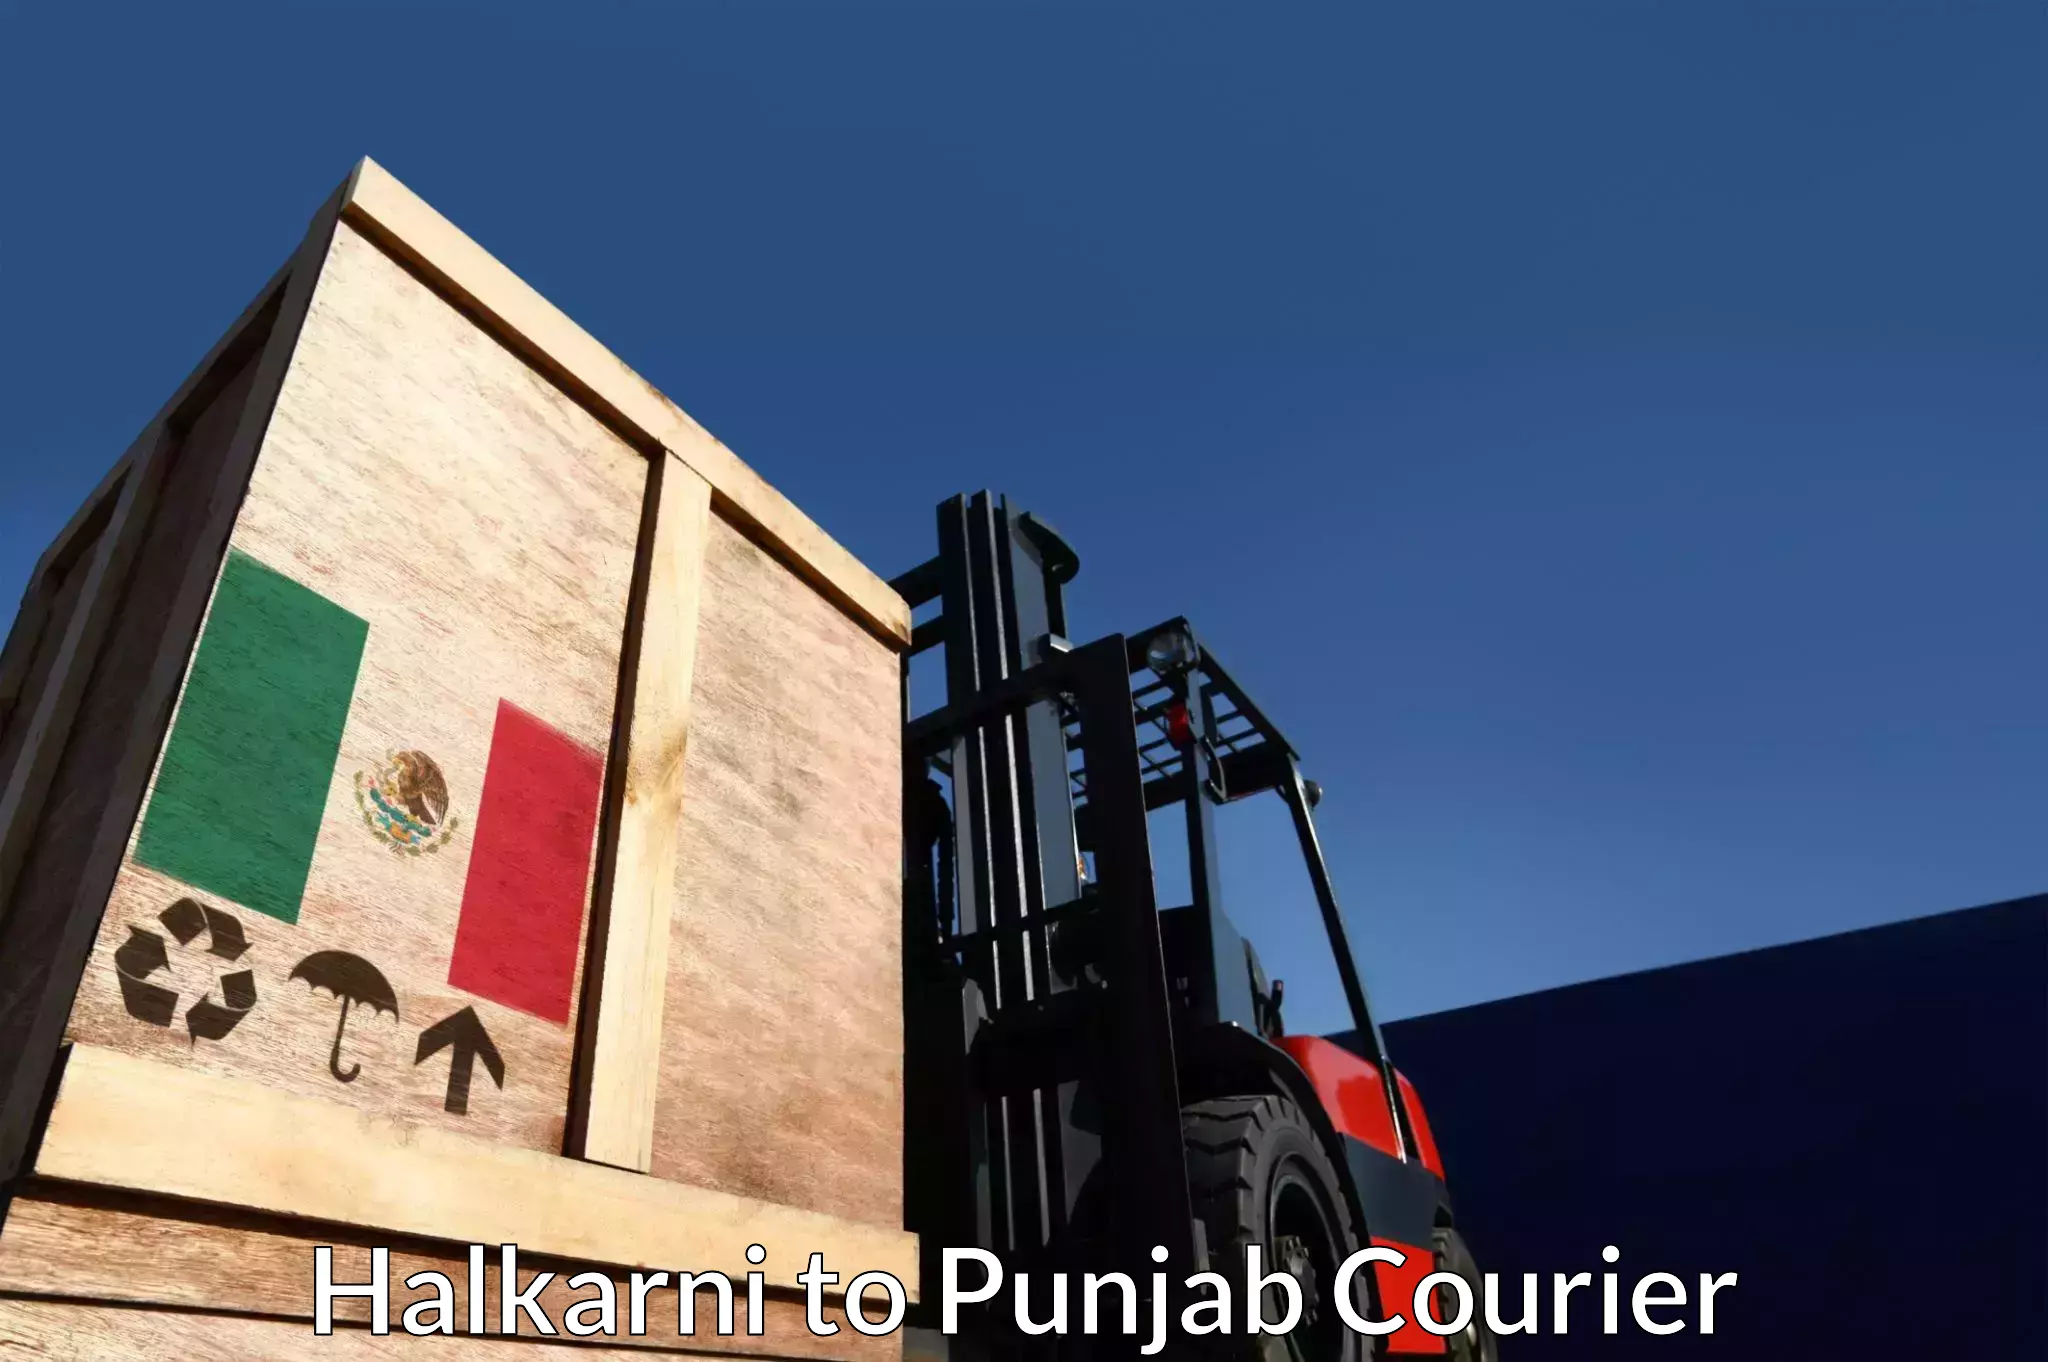 Parcel service for businesses Halkarni to Punjab